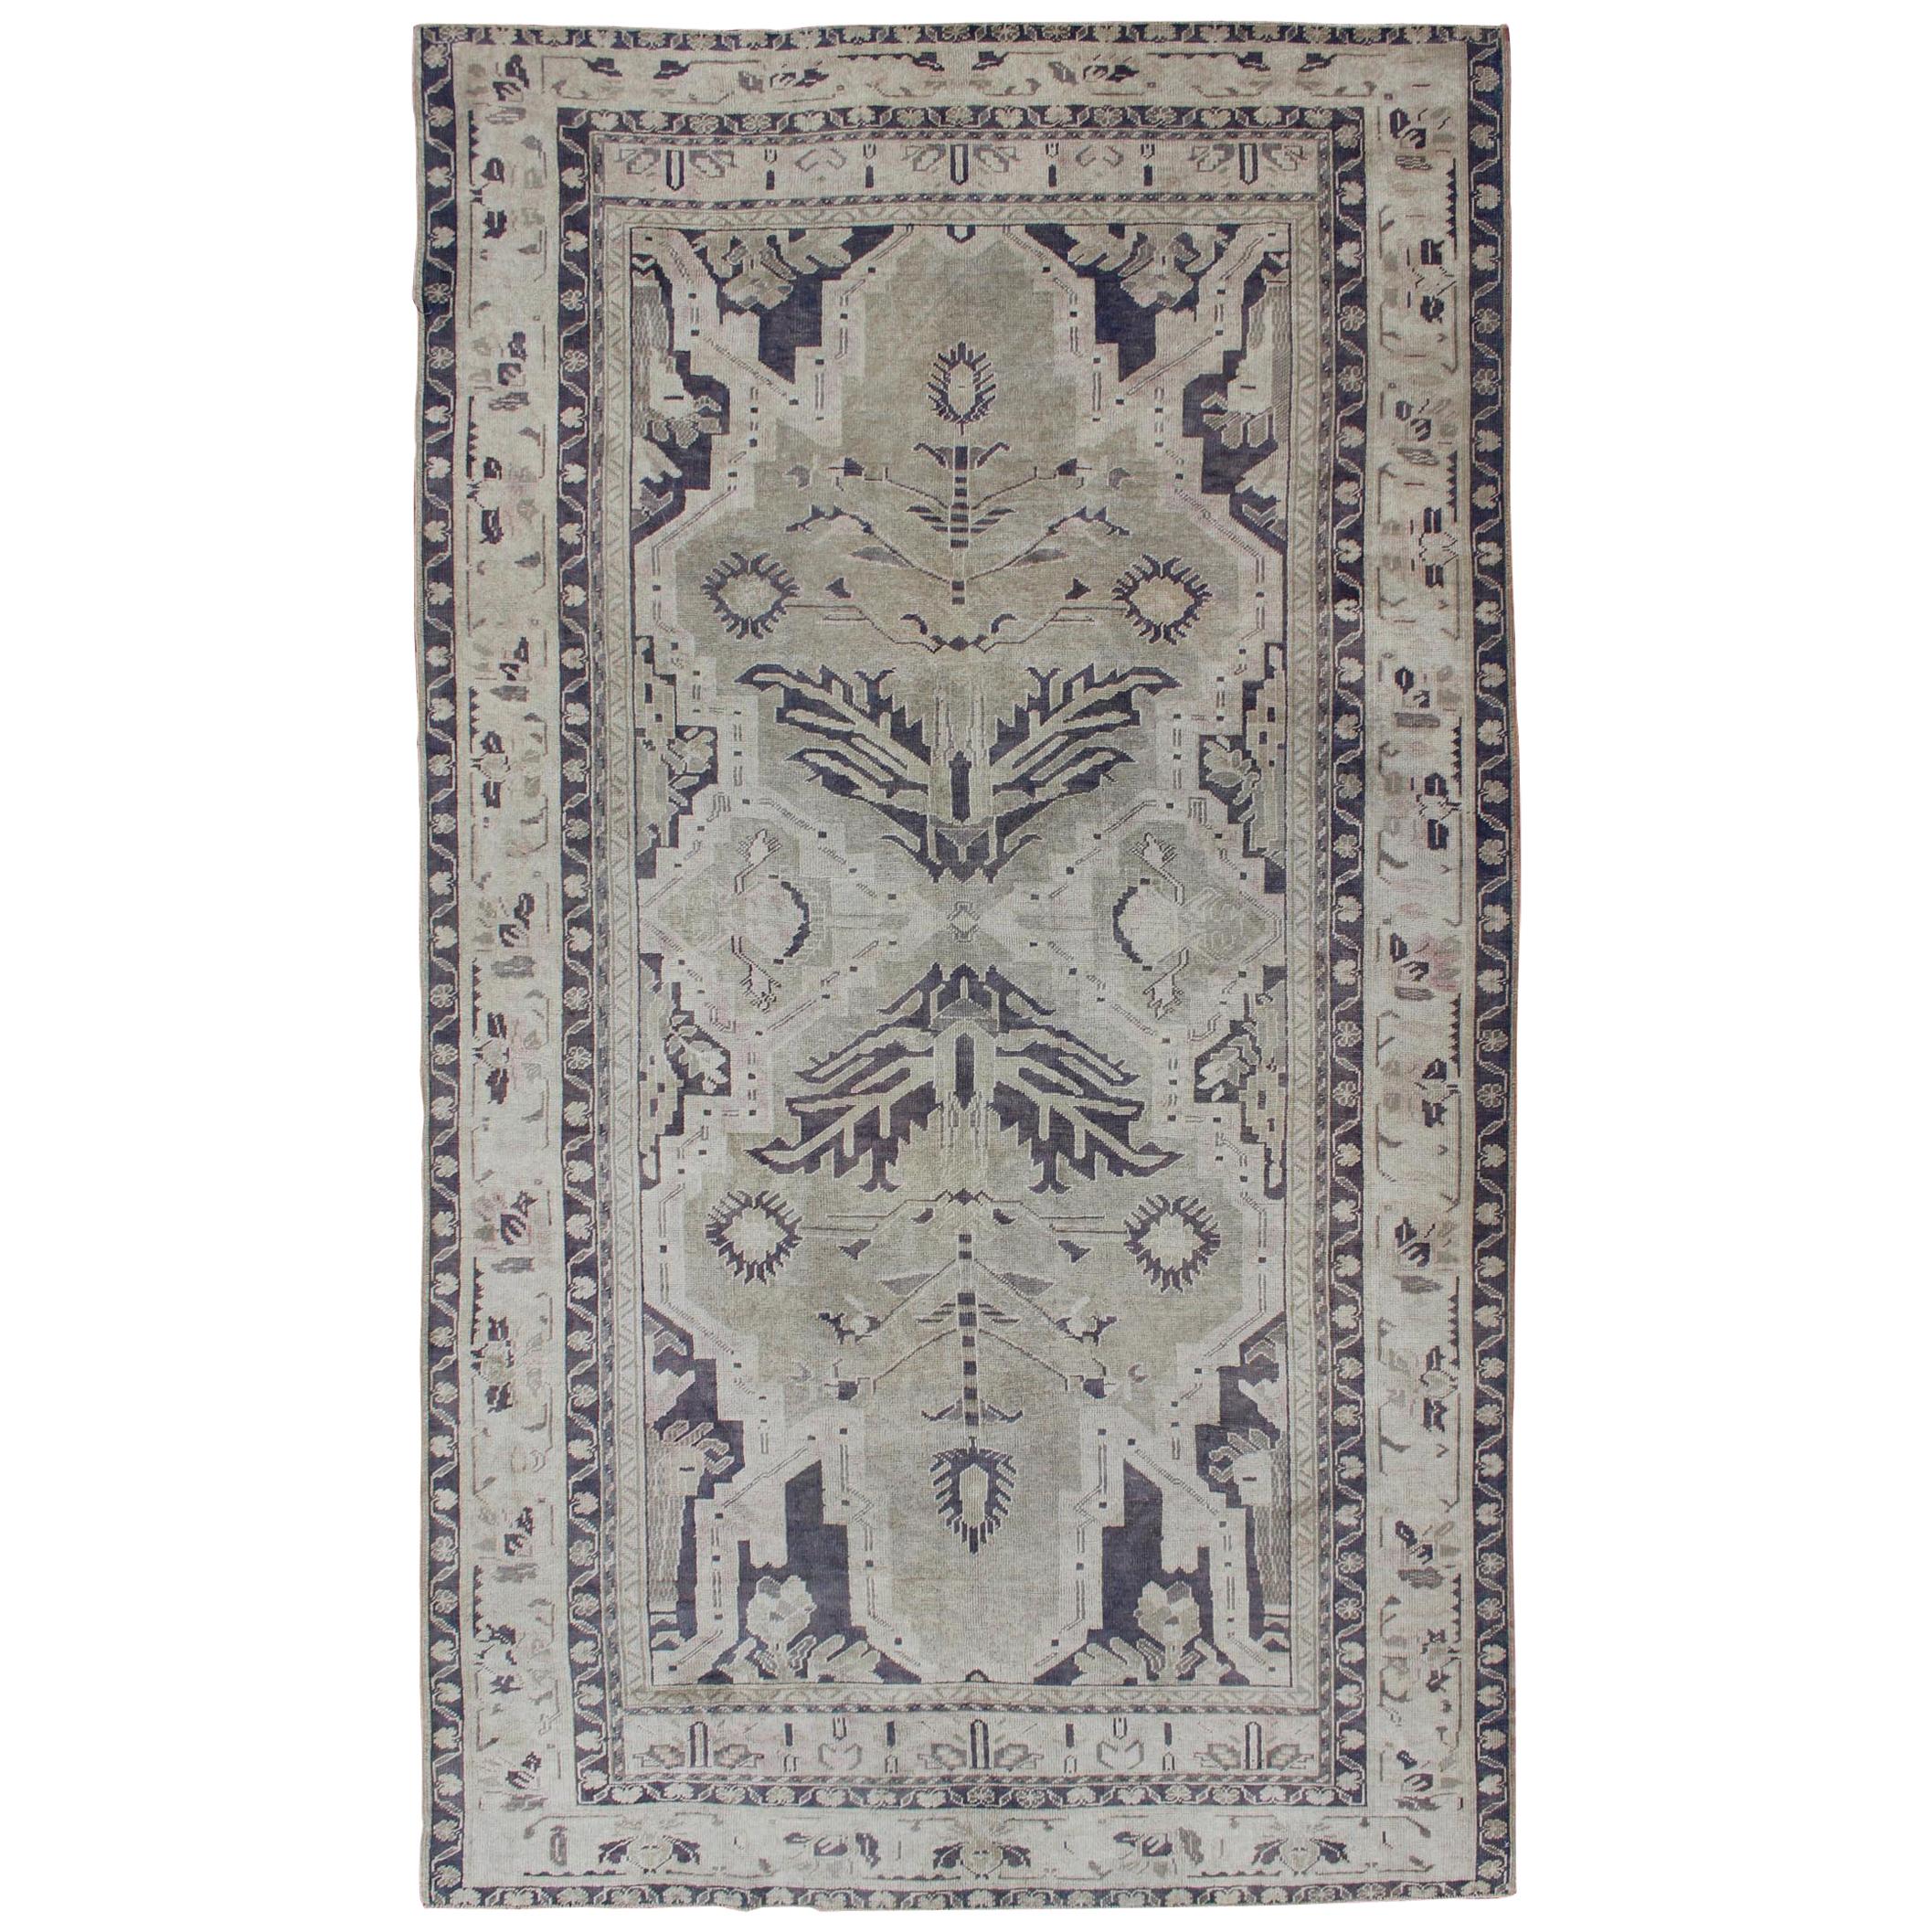 Türkischer Oushak-Teppich im Vintage-Stil mit doppeltem Medaillondesign in Dunkelblau und Taupe